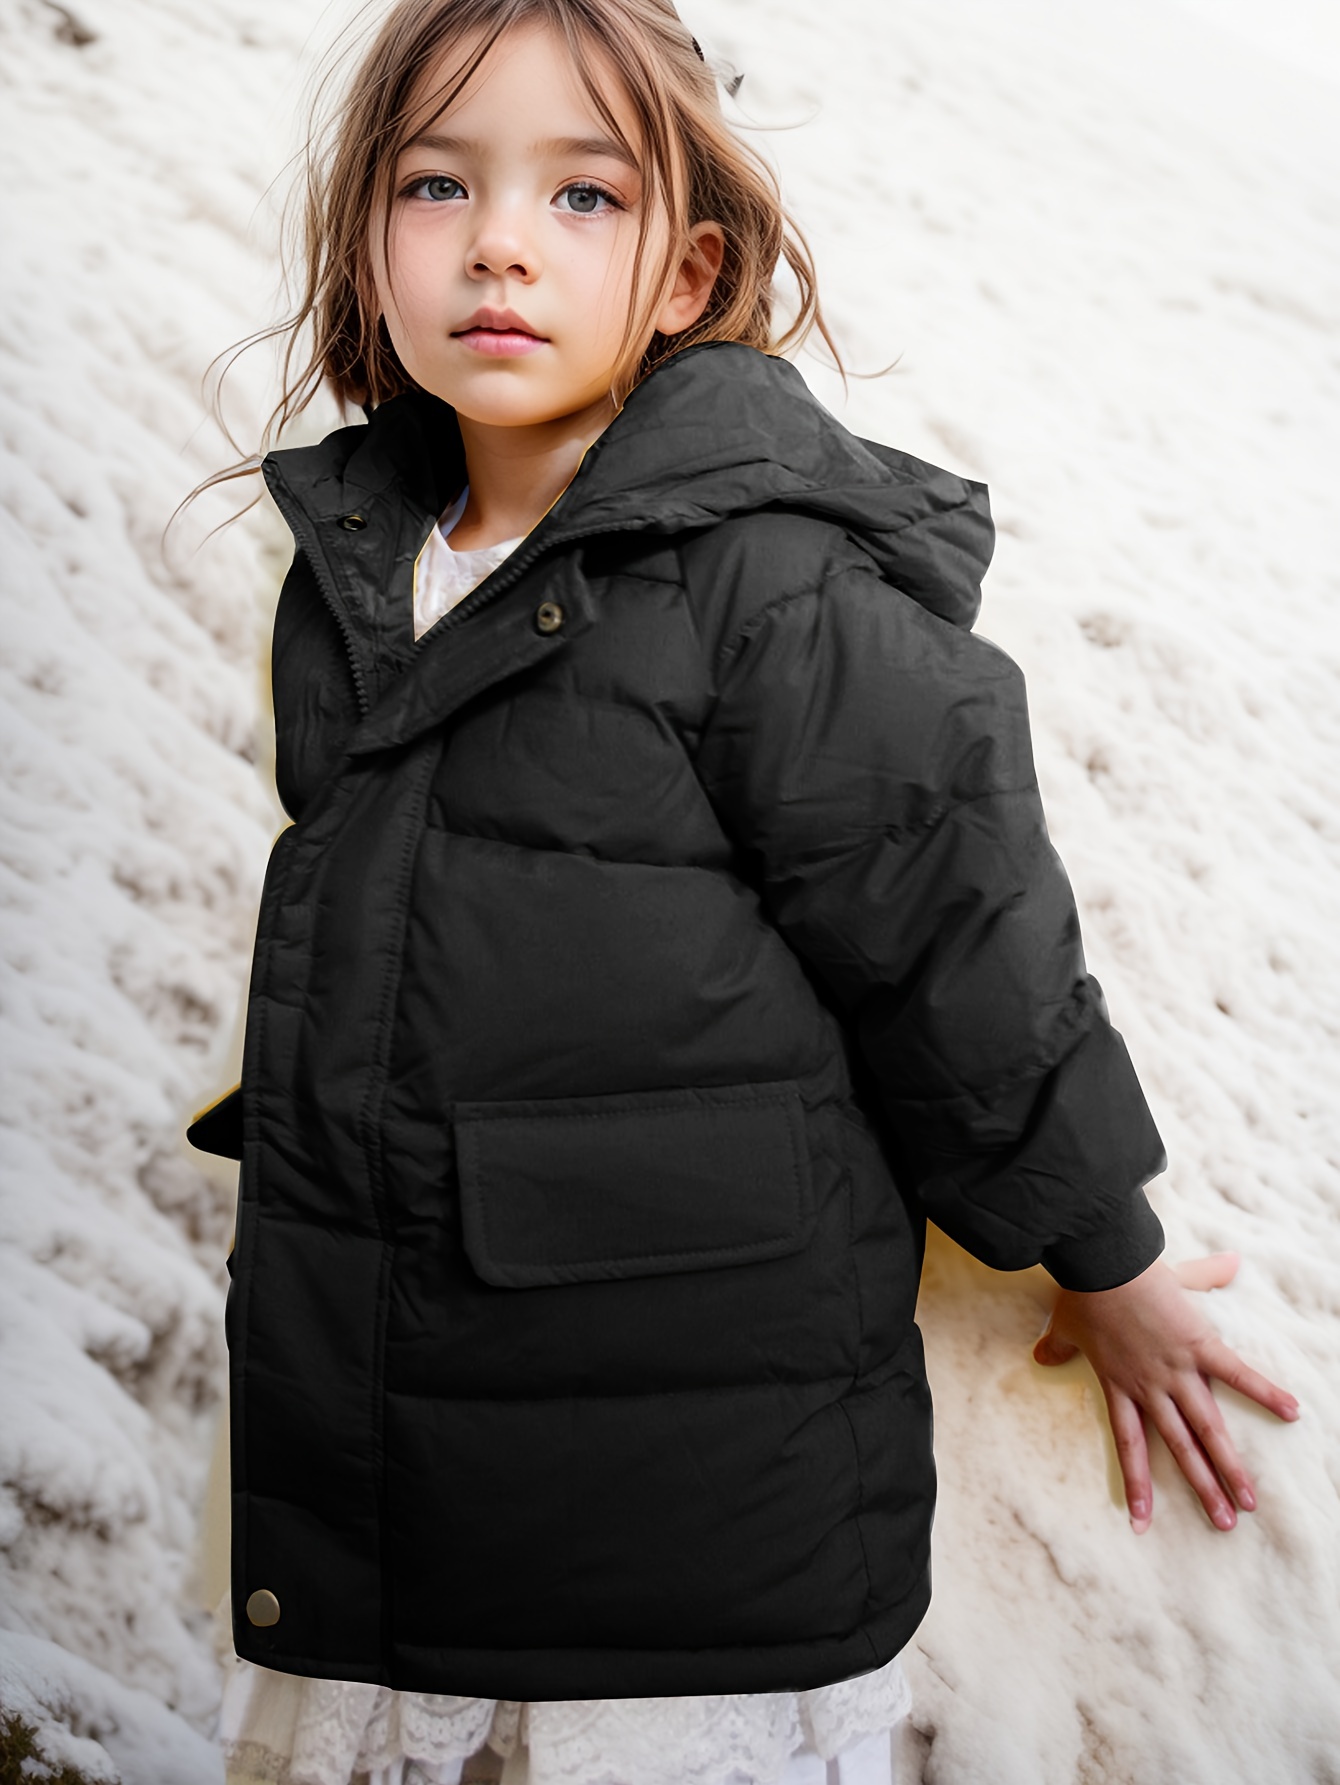 Pantalón y chaqueta de nieve para niño, traje de nieve para niña, ropa de  invierno para nieve, abrigo para niños